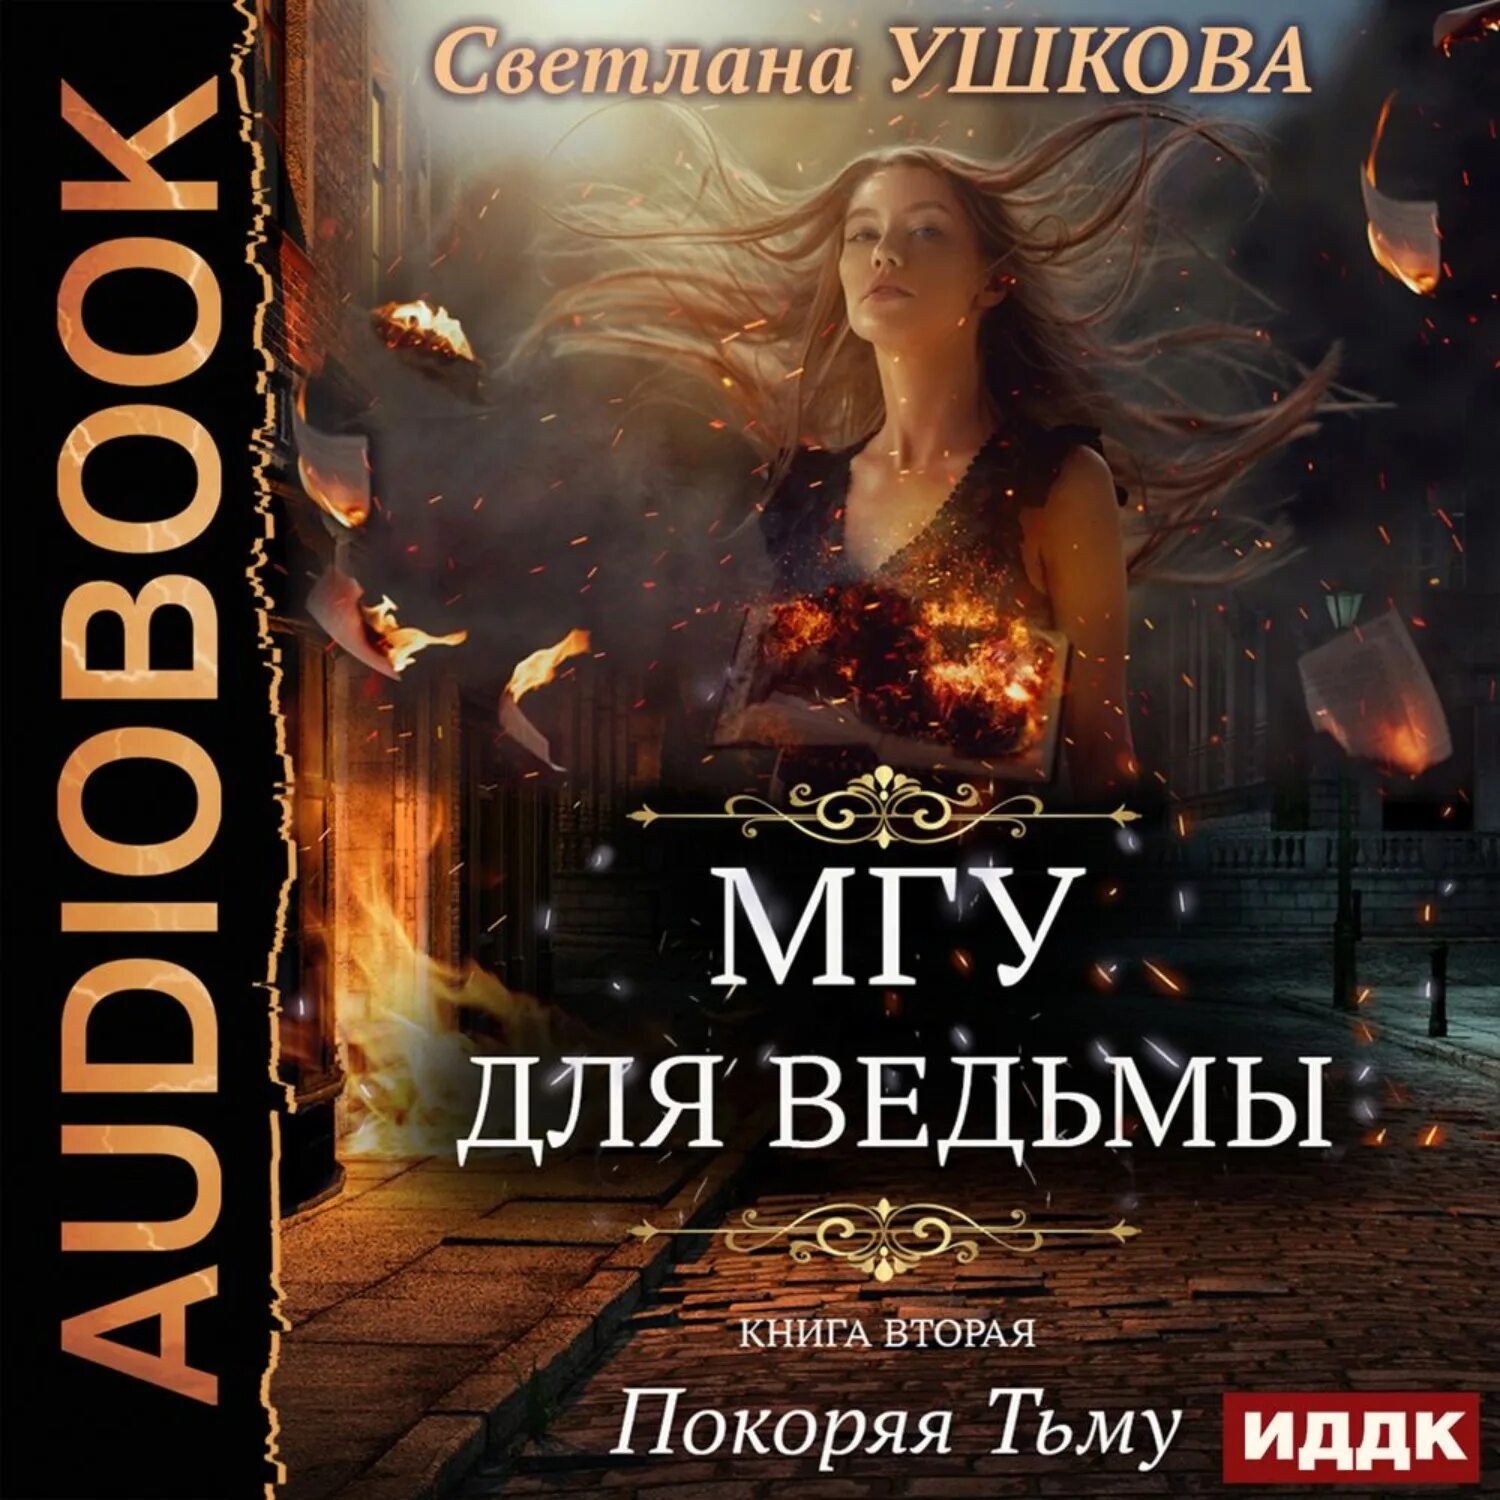 Ведьма цикл книг. Книга МГУ для ведьмы.